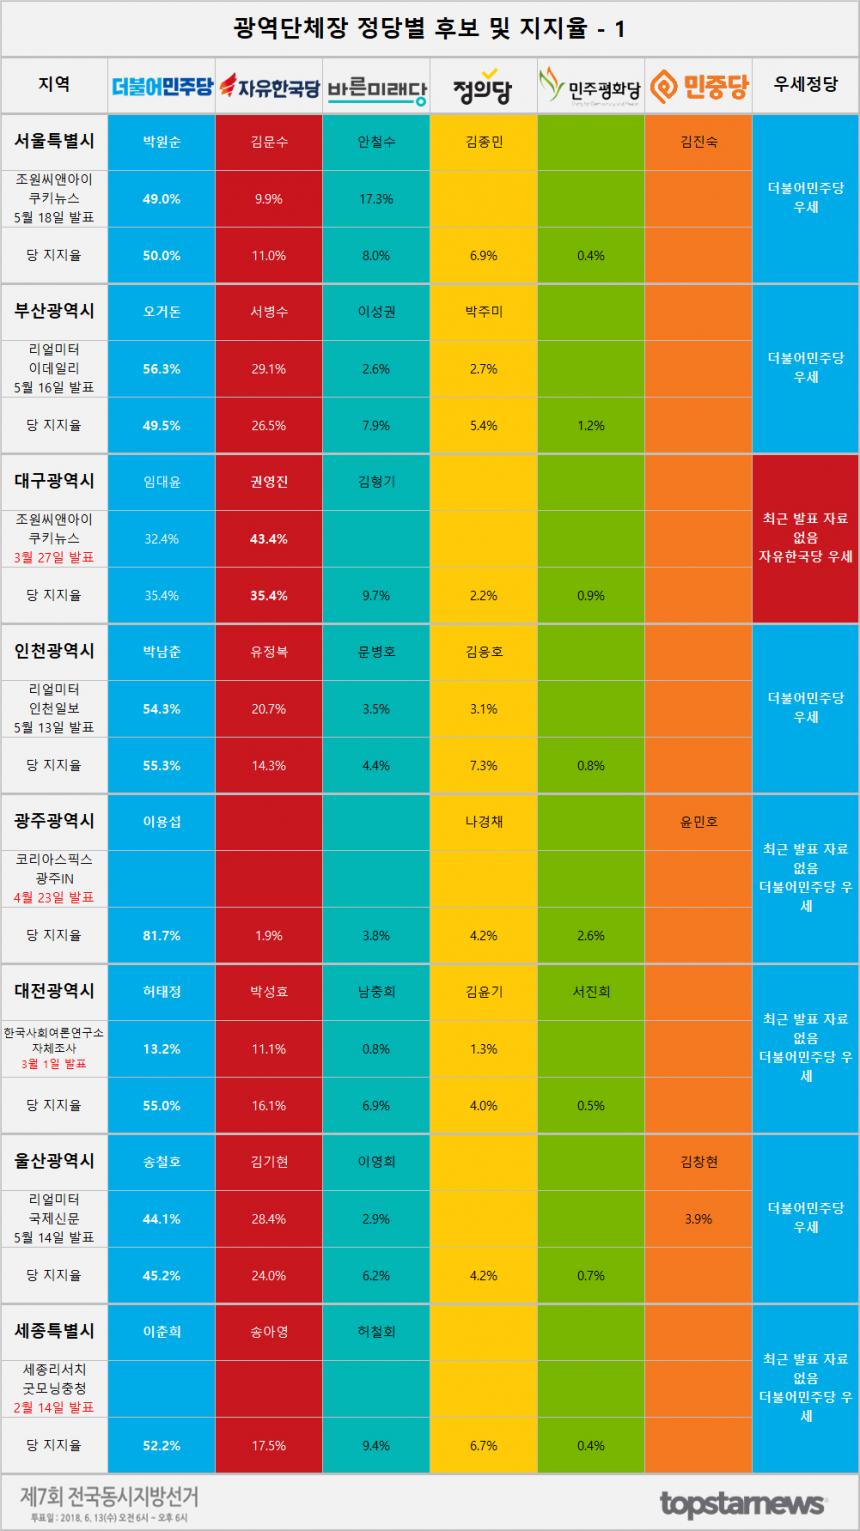 광역시 후보 지지율 여론조사 결과 종합